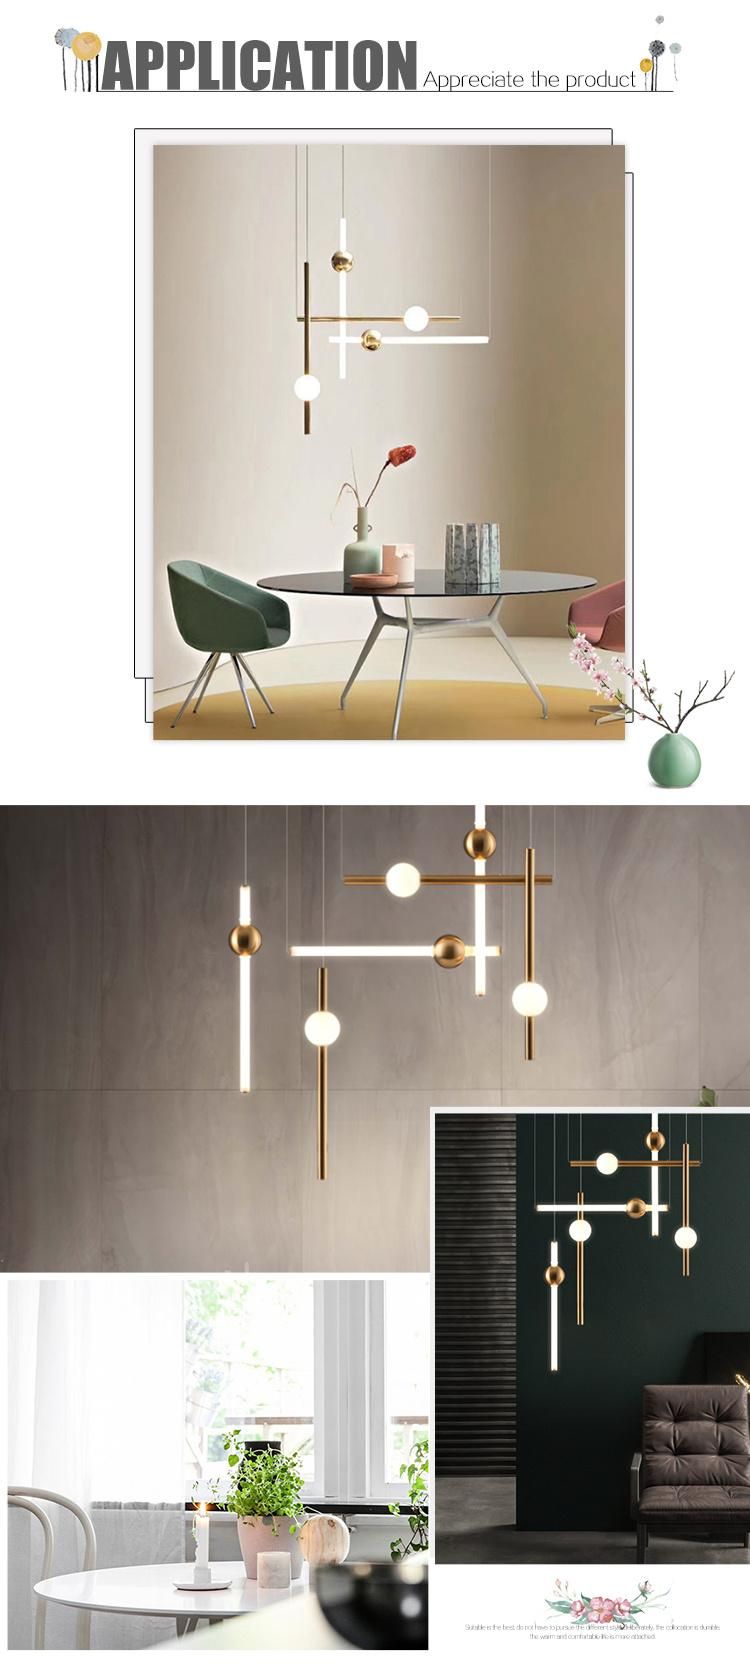 Zhongshan Modern Designer LED Home Decorative Pendant Light